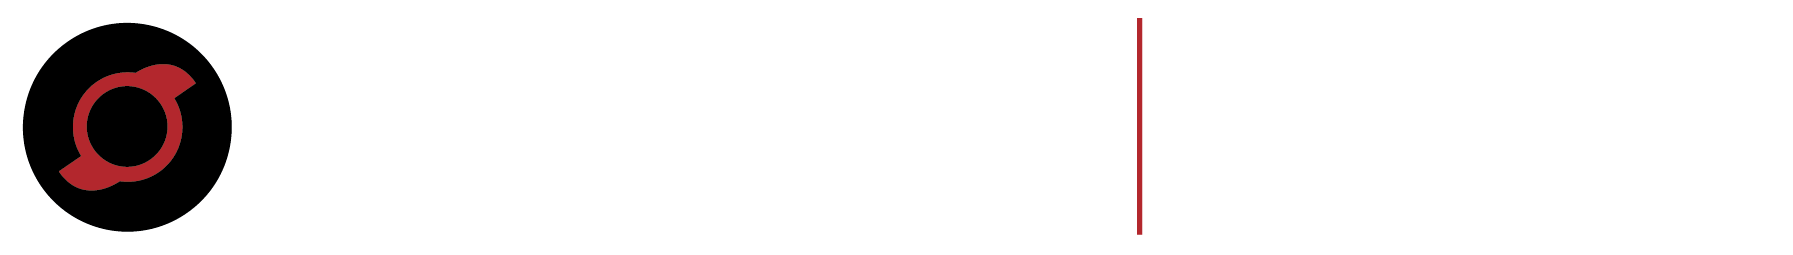 Avinger_FLEX_Logo_White_Fill